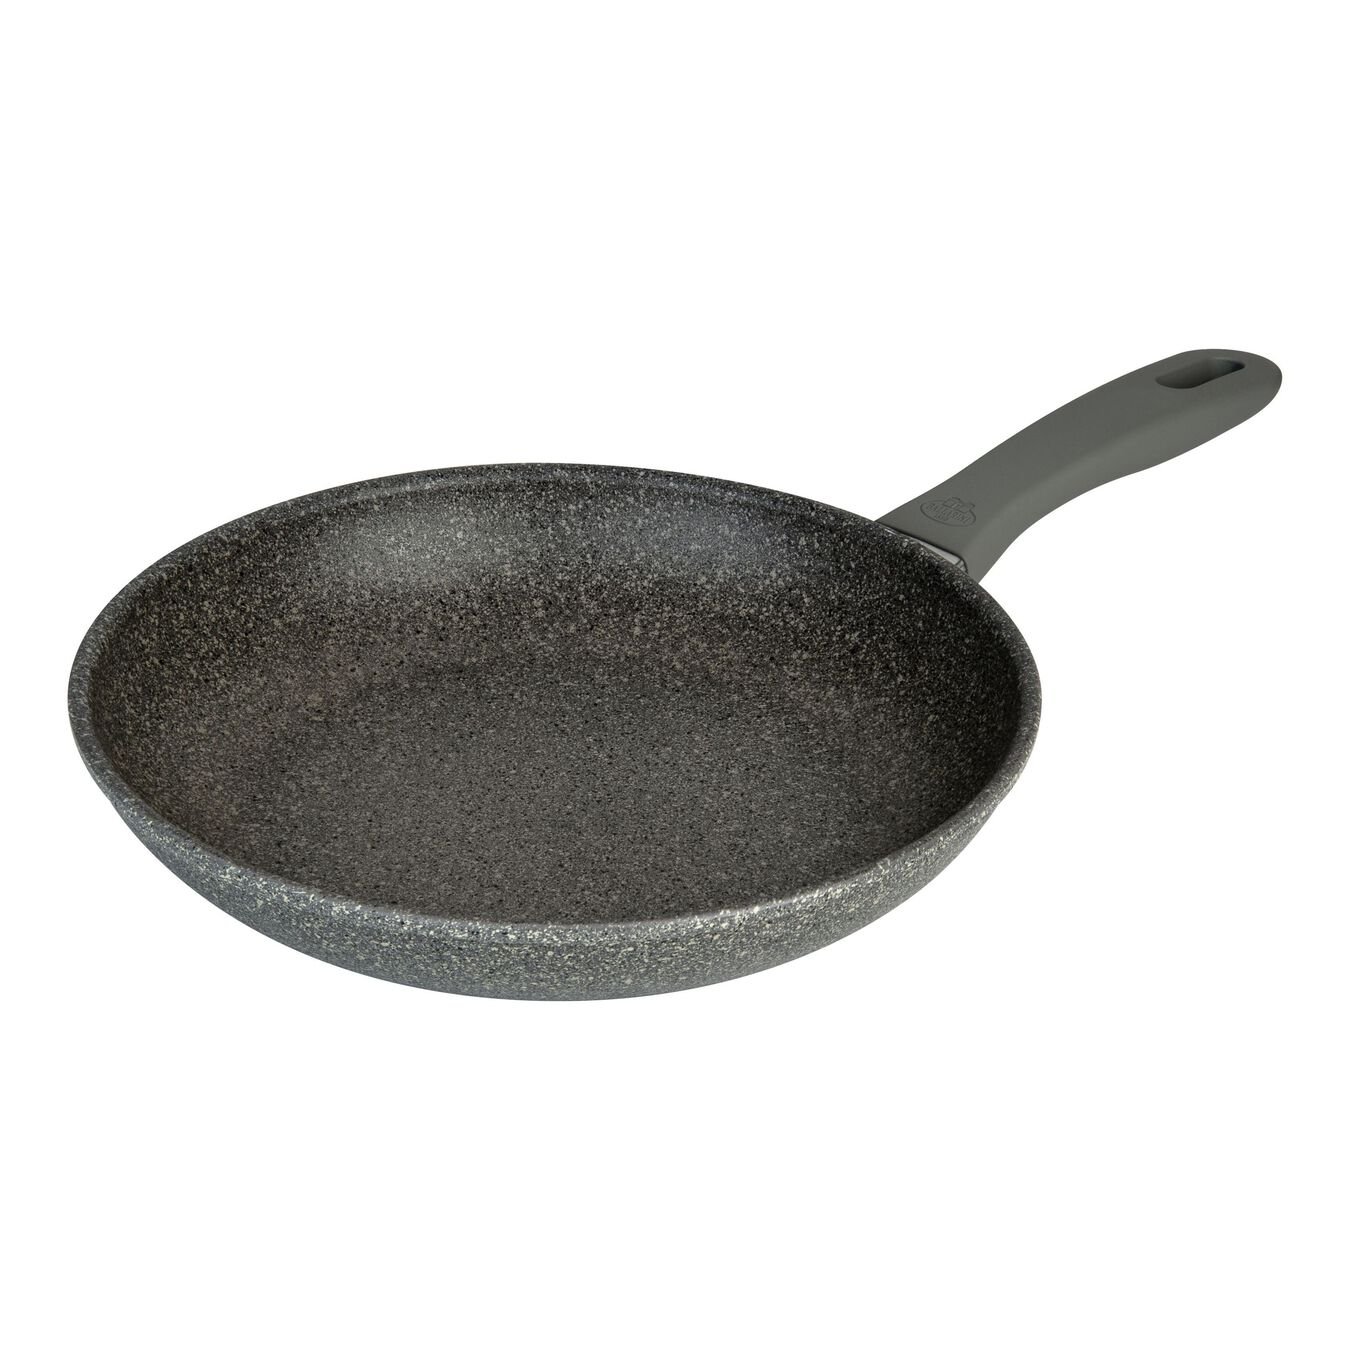 20 cm / 8 inch aluminium Frying pan,,large 1